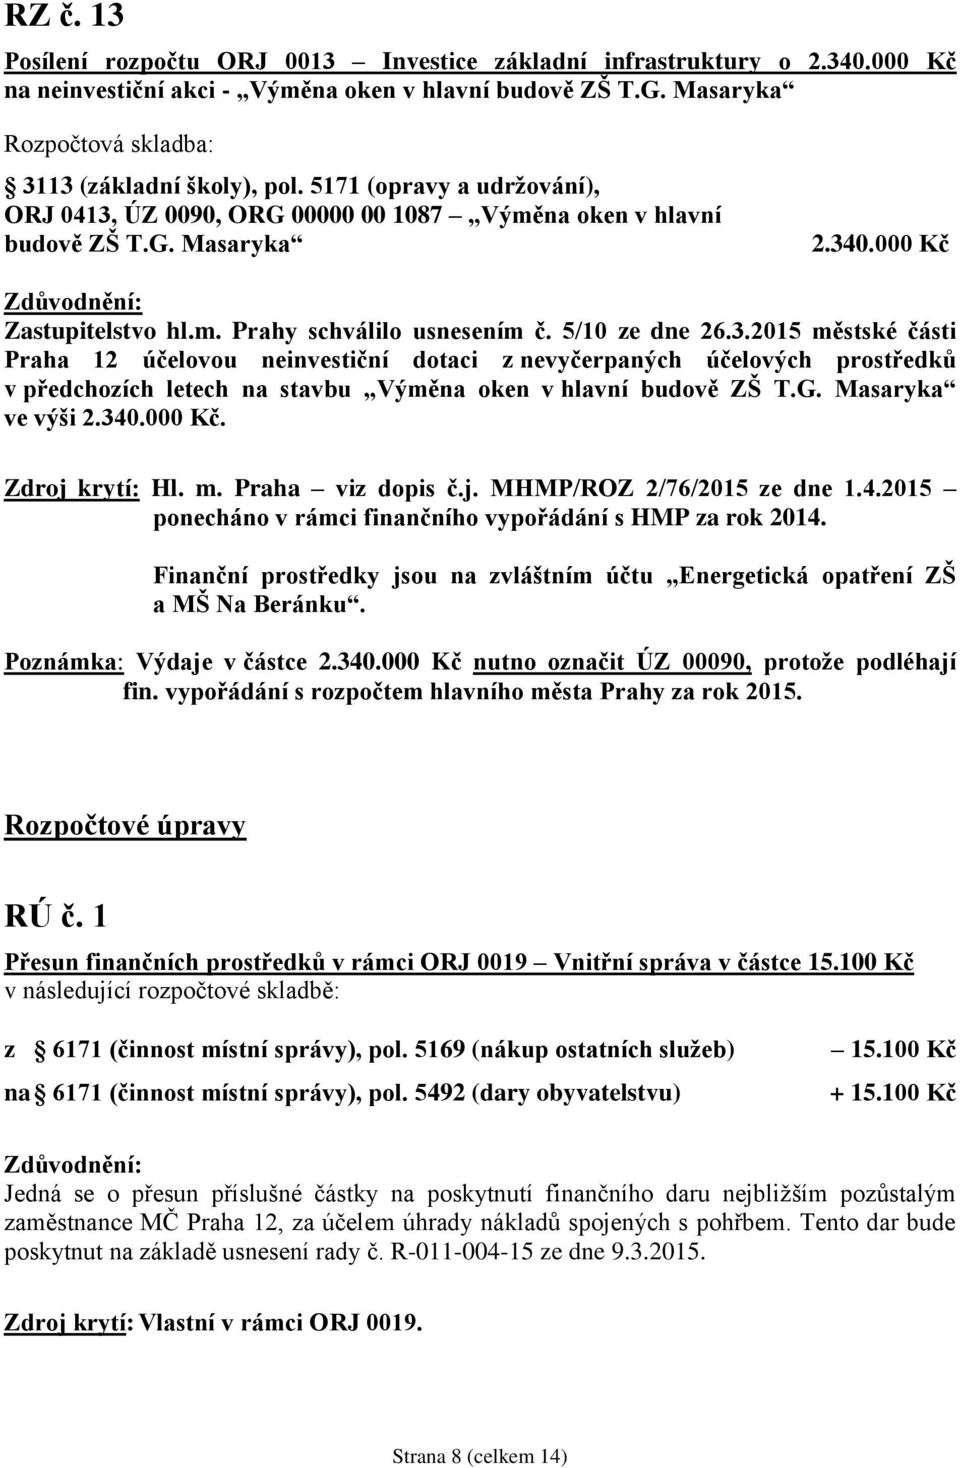 G. Masaryka ve výši 2.340.000 Kč. Zdroj krytí: Hl. m. Praha viz dopis č.j. MHMP/ROZ 2/76/2015 ze dne 1.4.2015 ponecháno v rámci finančního vypořádání s HMP za rok 2014.